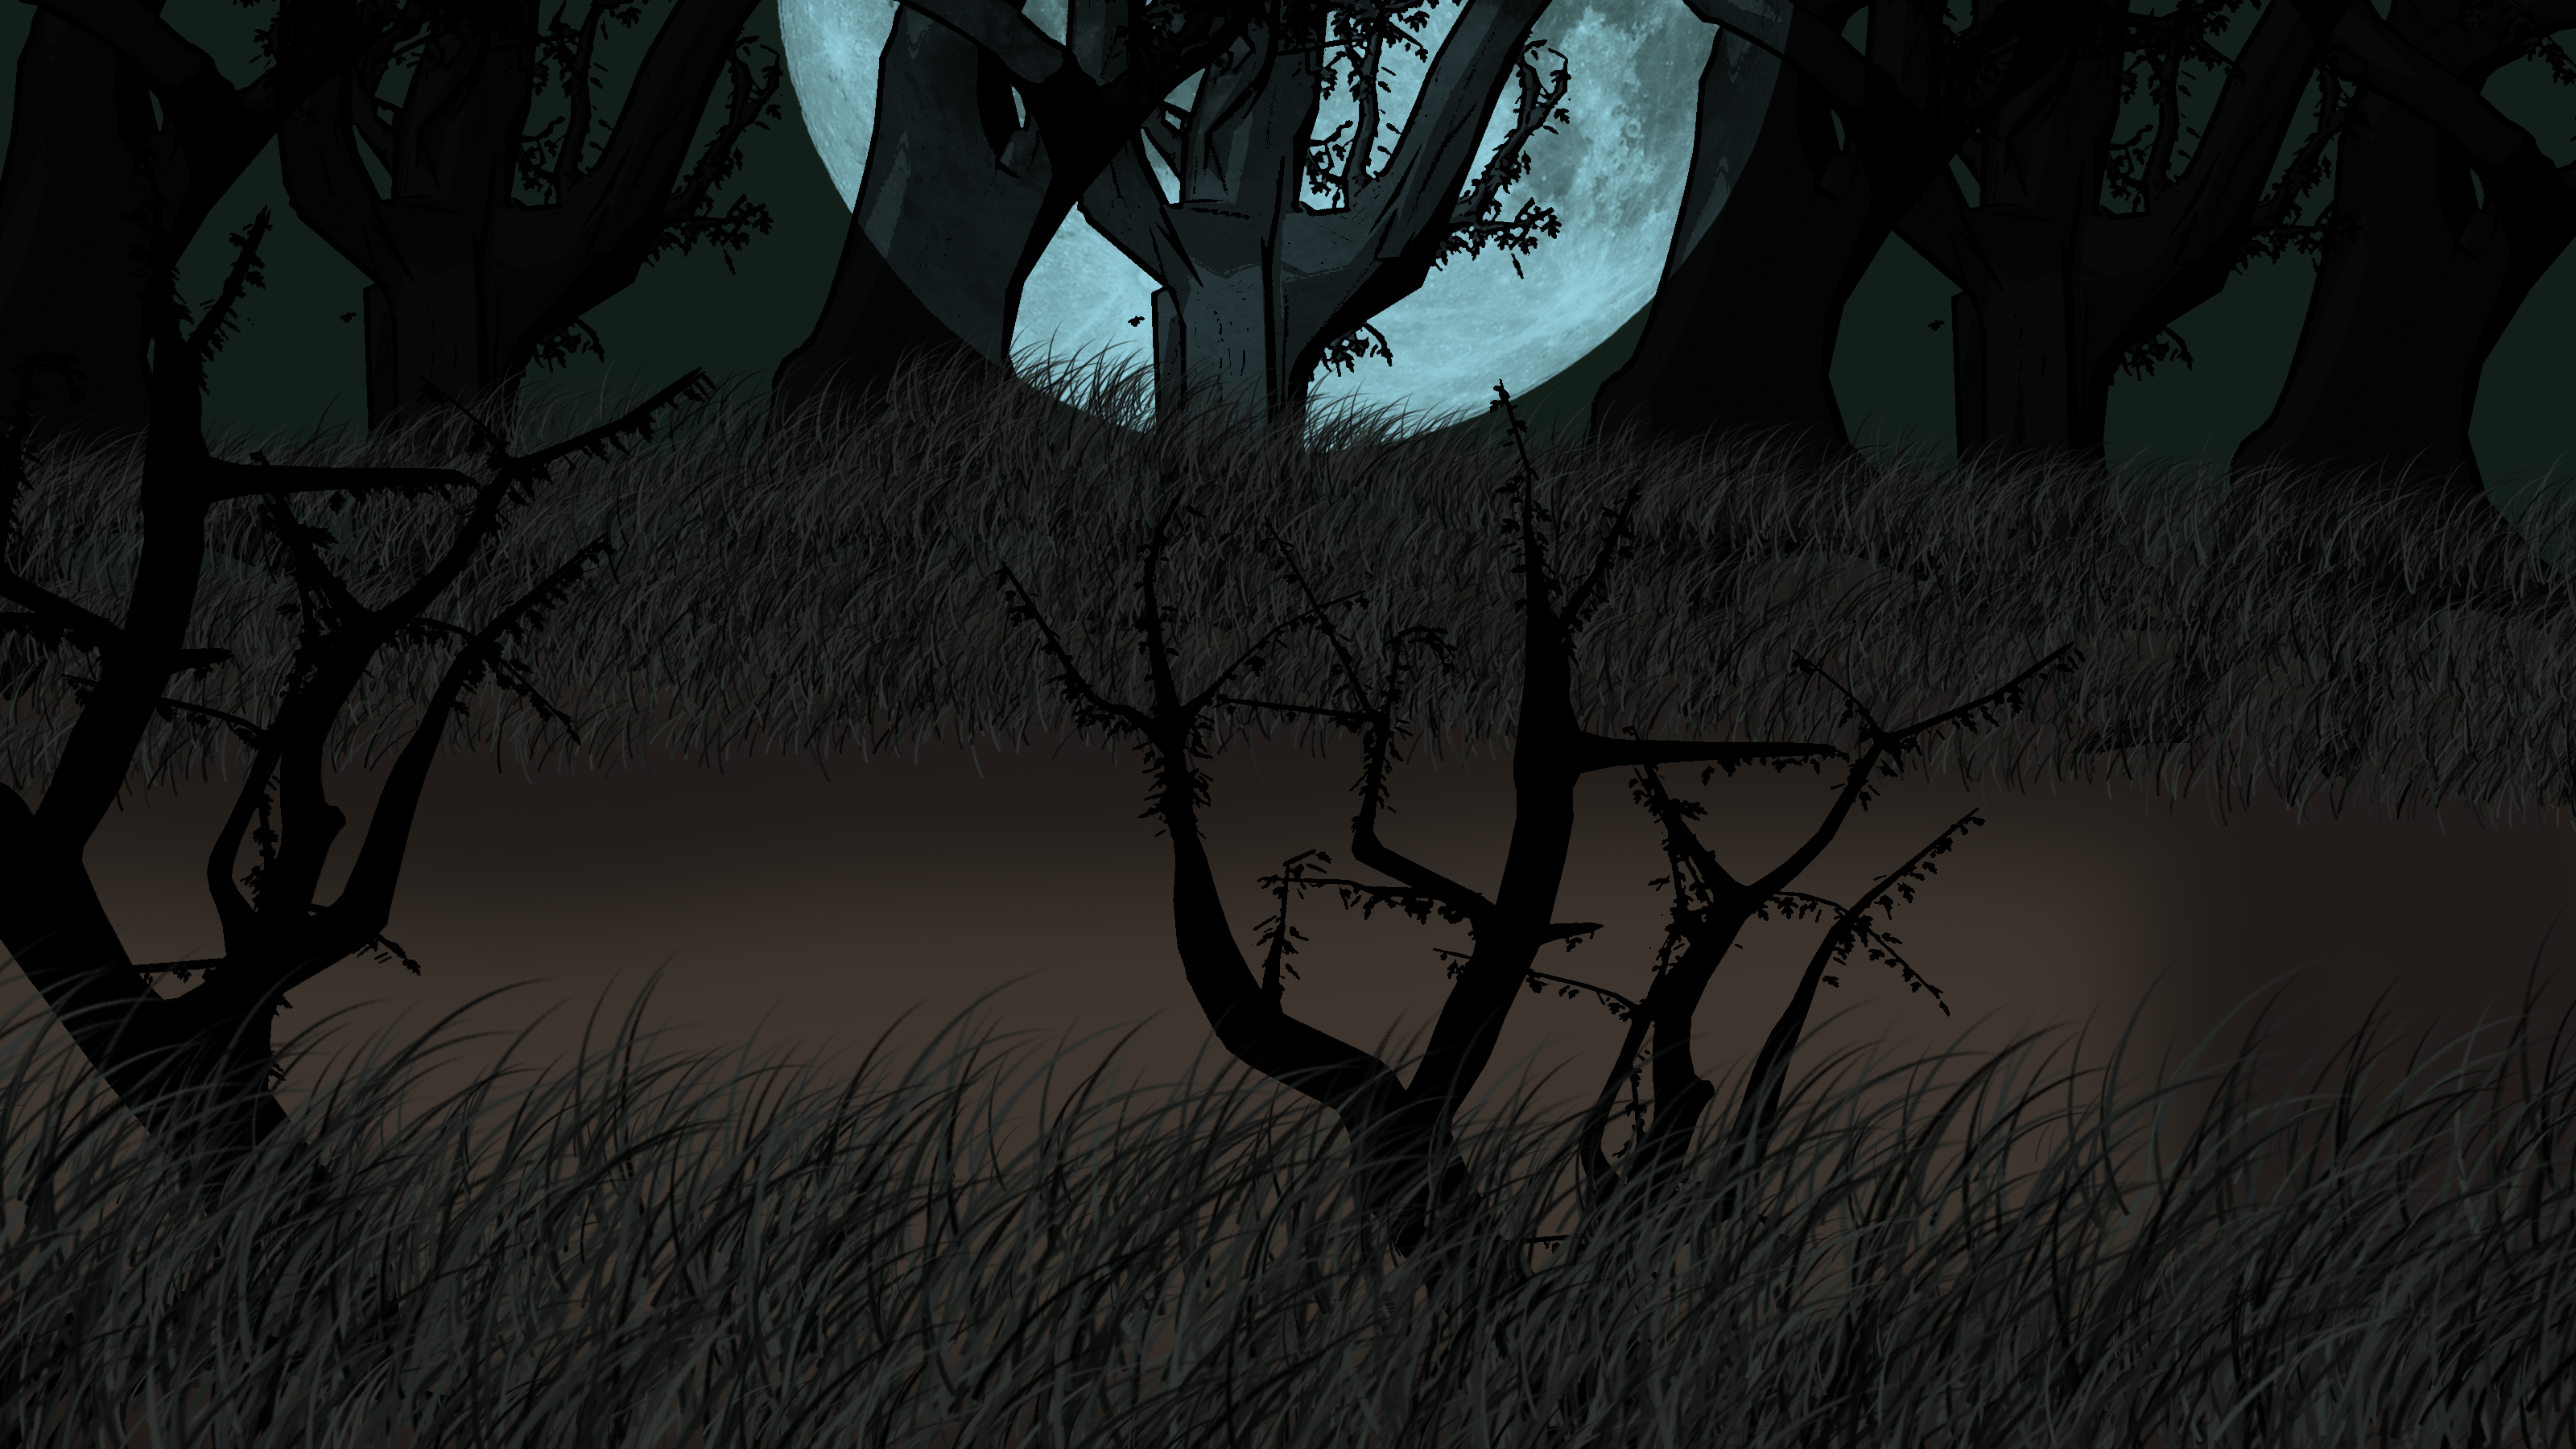 Dark forest background by IgnisSorceress on DeviantArt